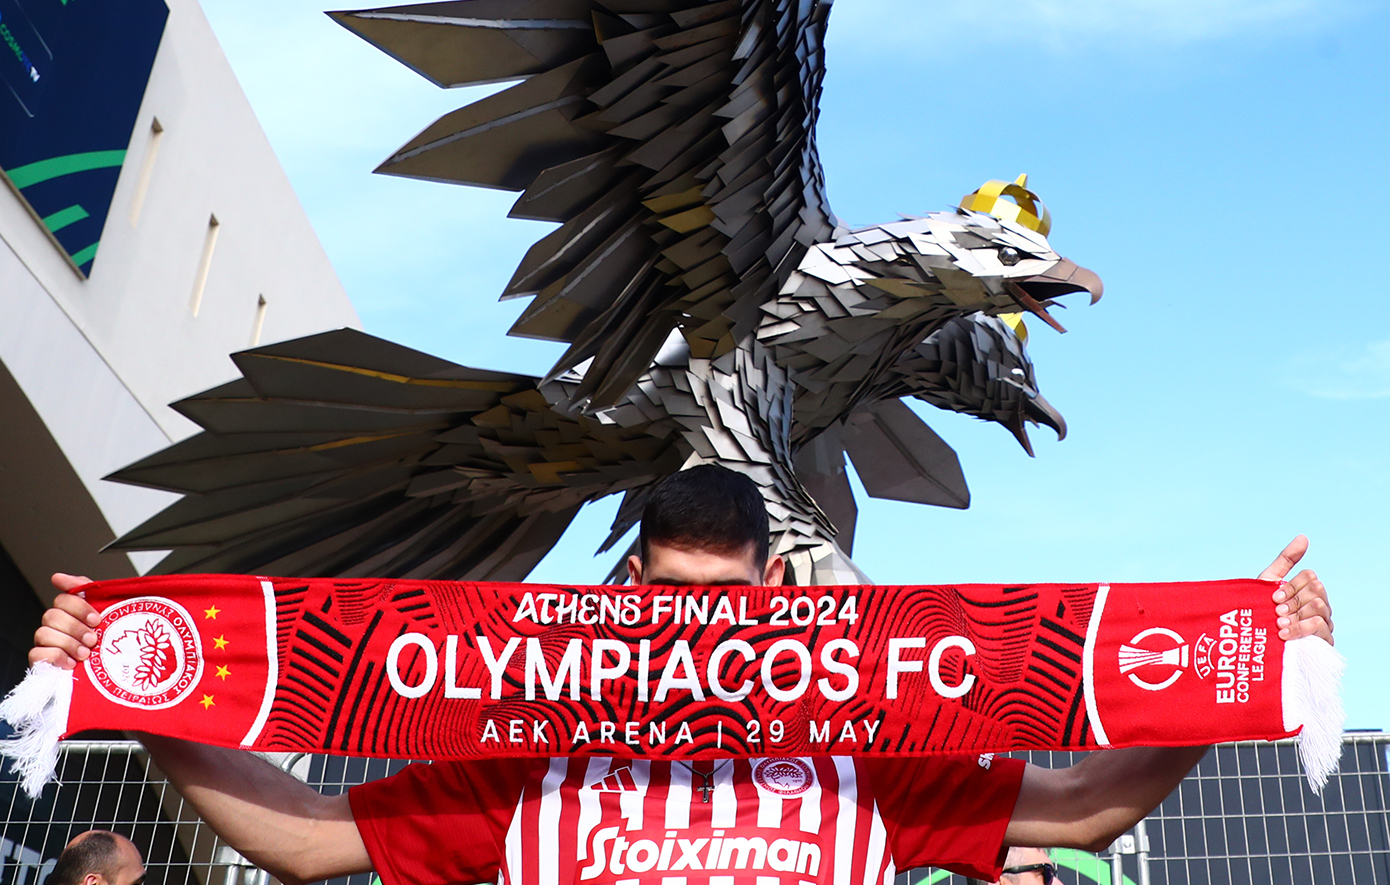 Europa Conference League: Οι φίλοι του Ολυμπιακού φωτογραφίζονται μπροστά στον δικέφαλο αετό της ΑΕΚ